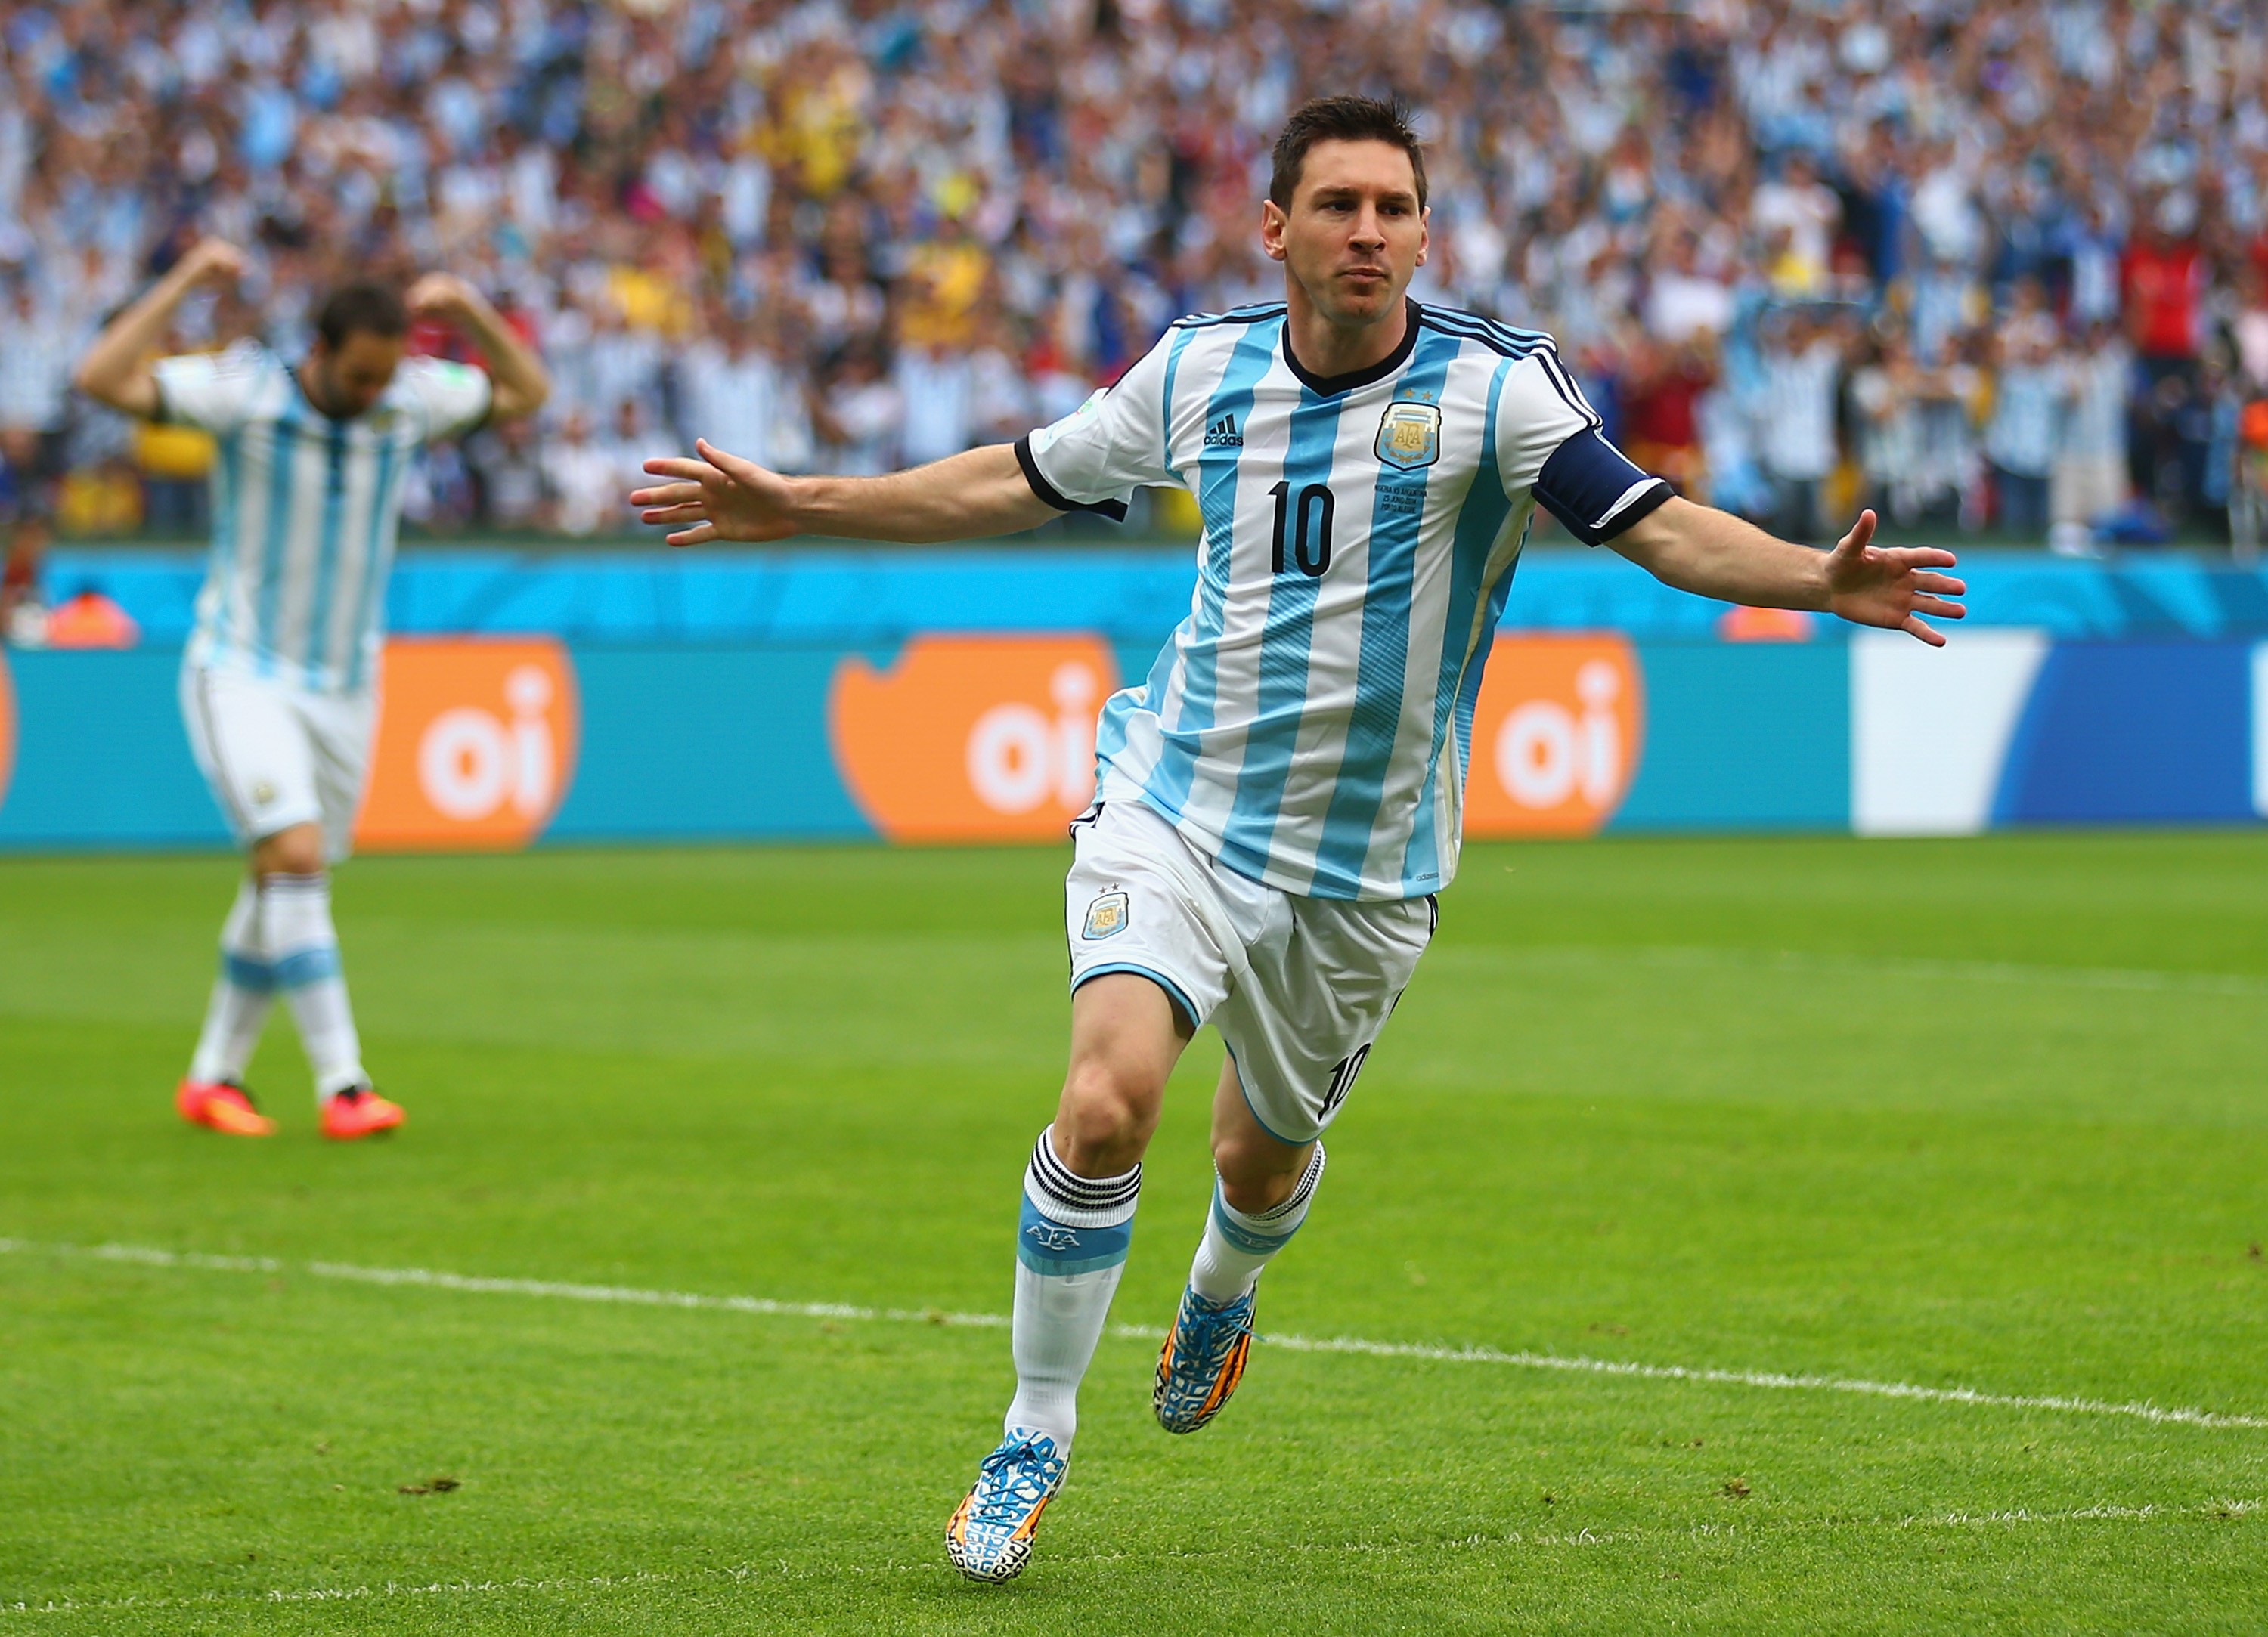 Entenda o talento de Lionel Messi e outros craques (Foto: Getty Images)